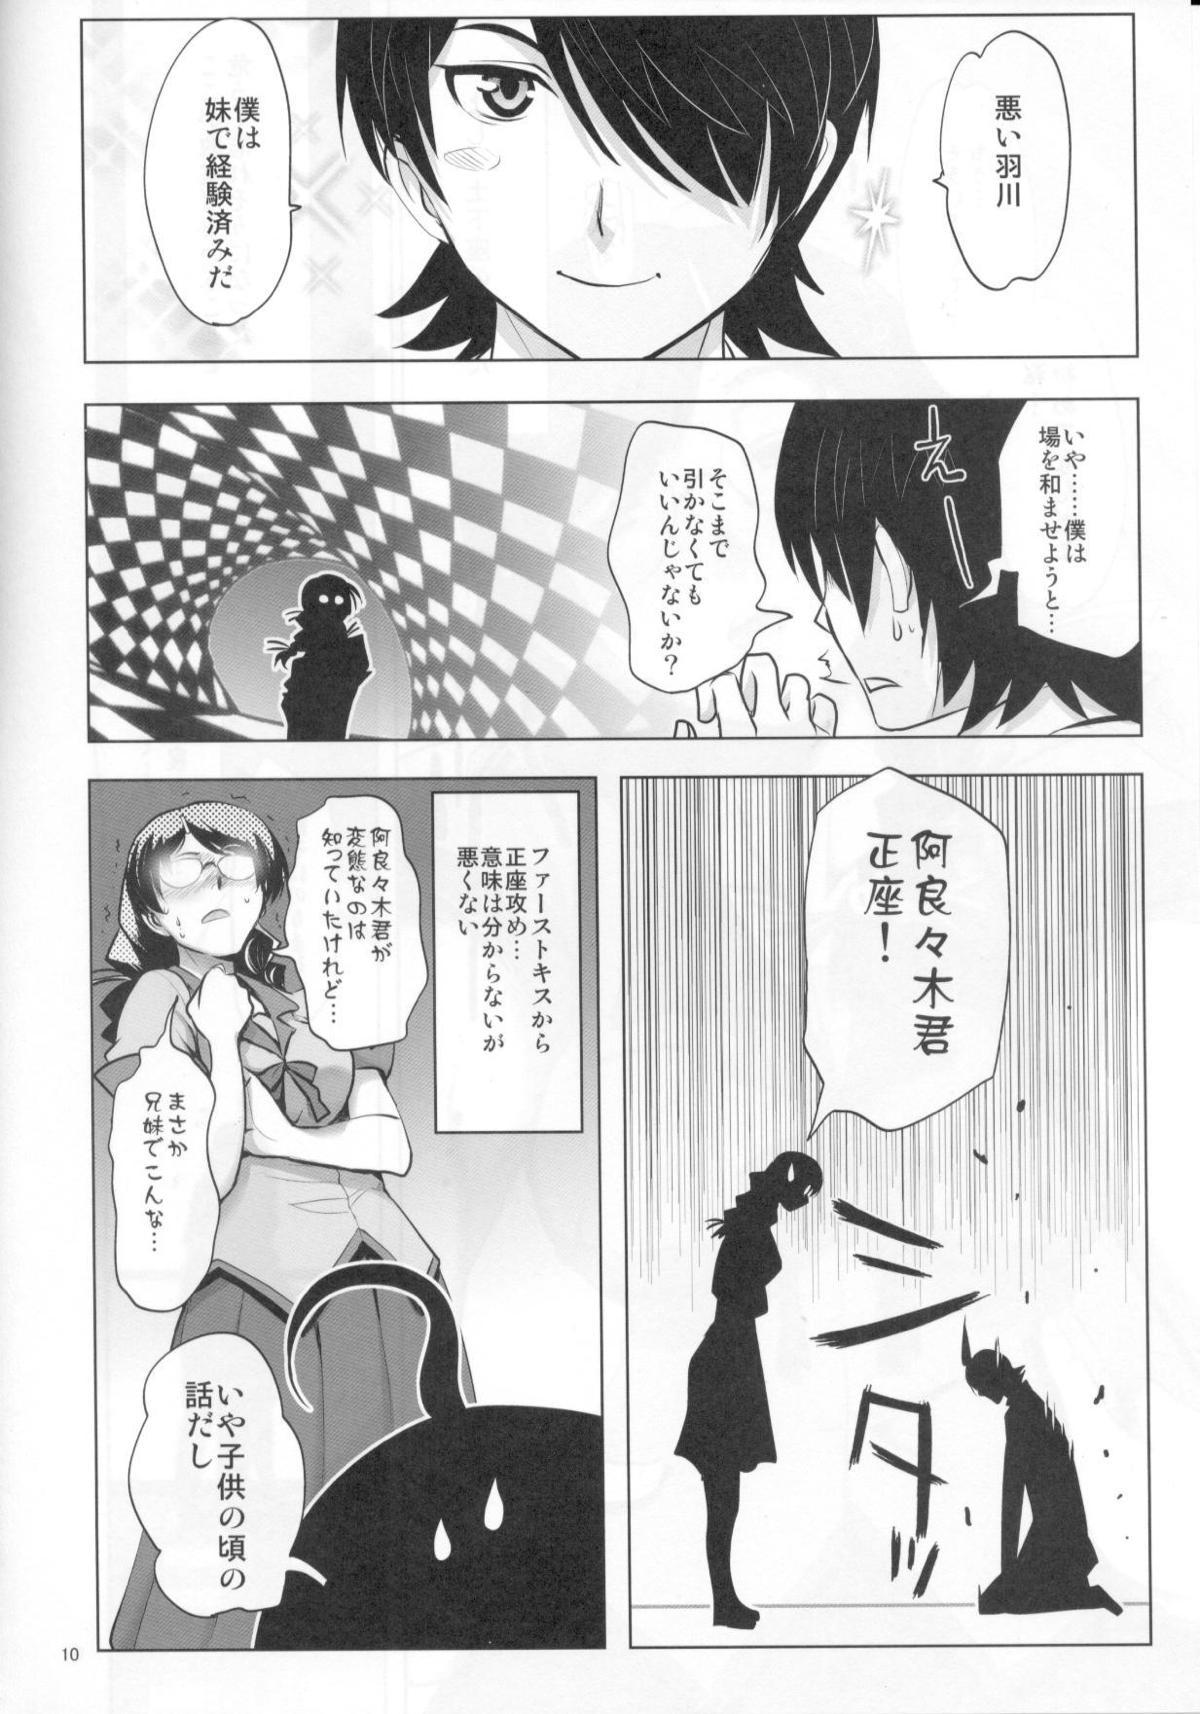 Office ROOT HANEKAWA - Bakemonogatari Story - Page 6